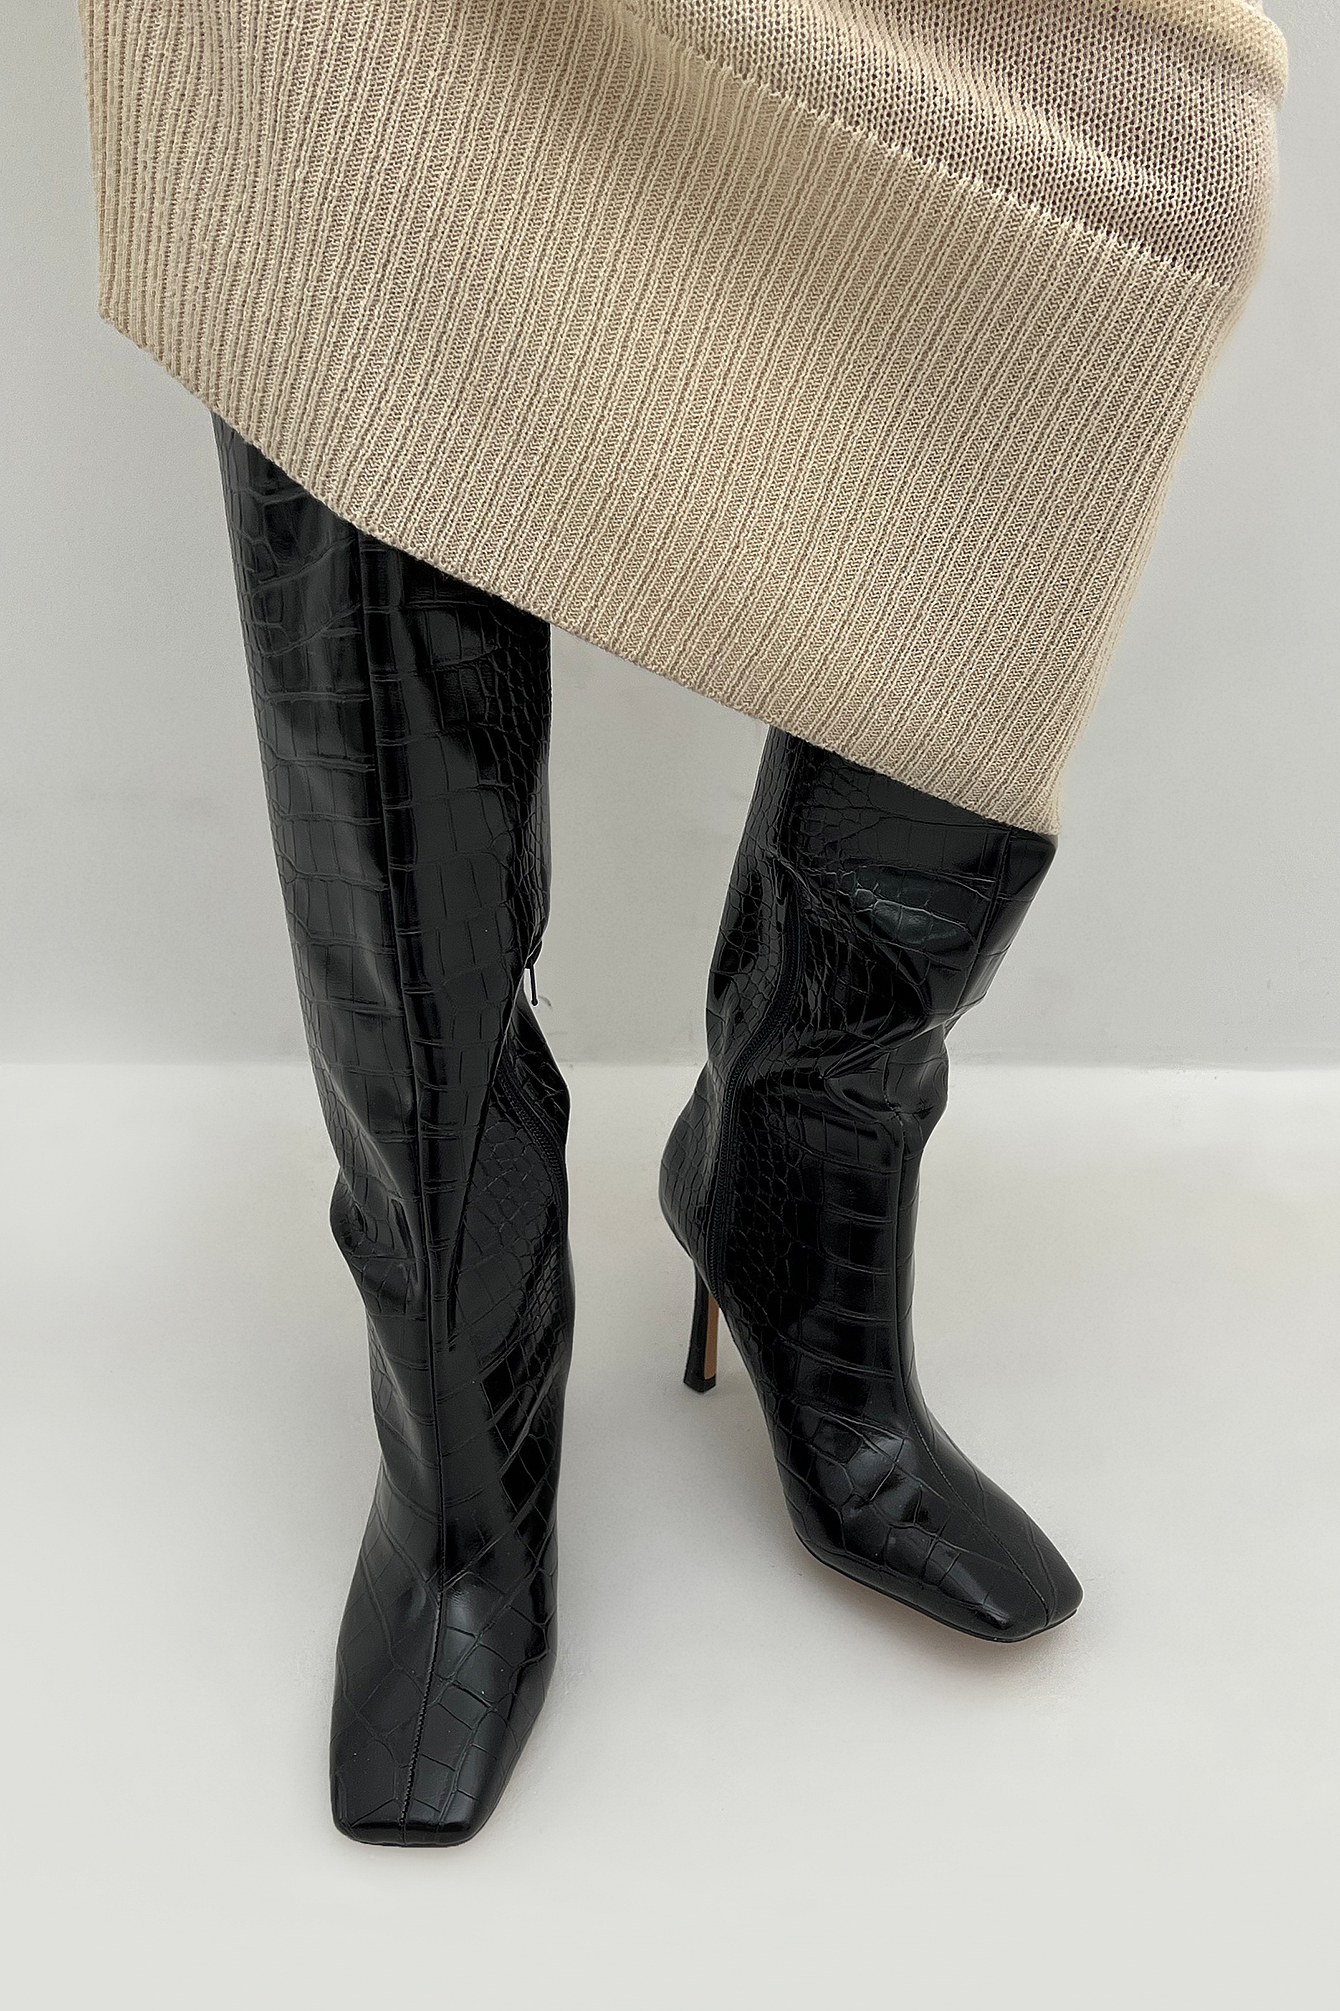 Black Wide Shaft Stiletto Boots